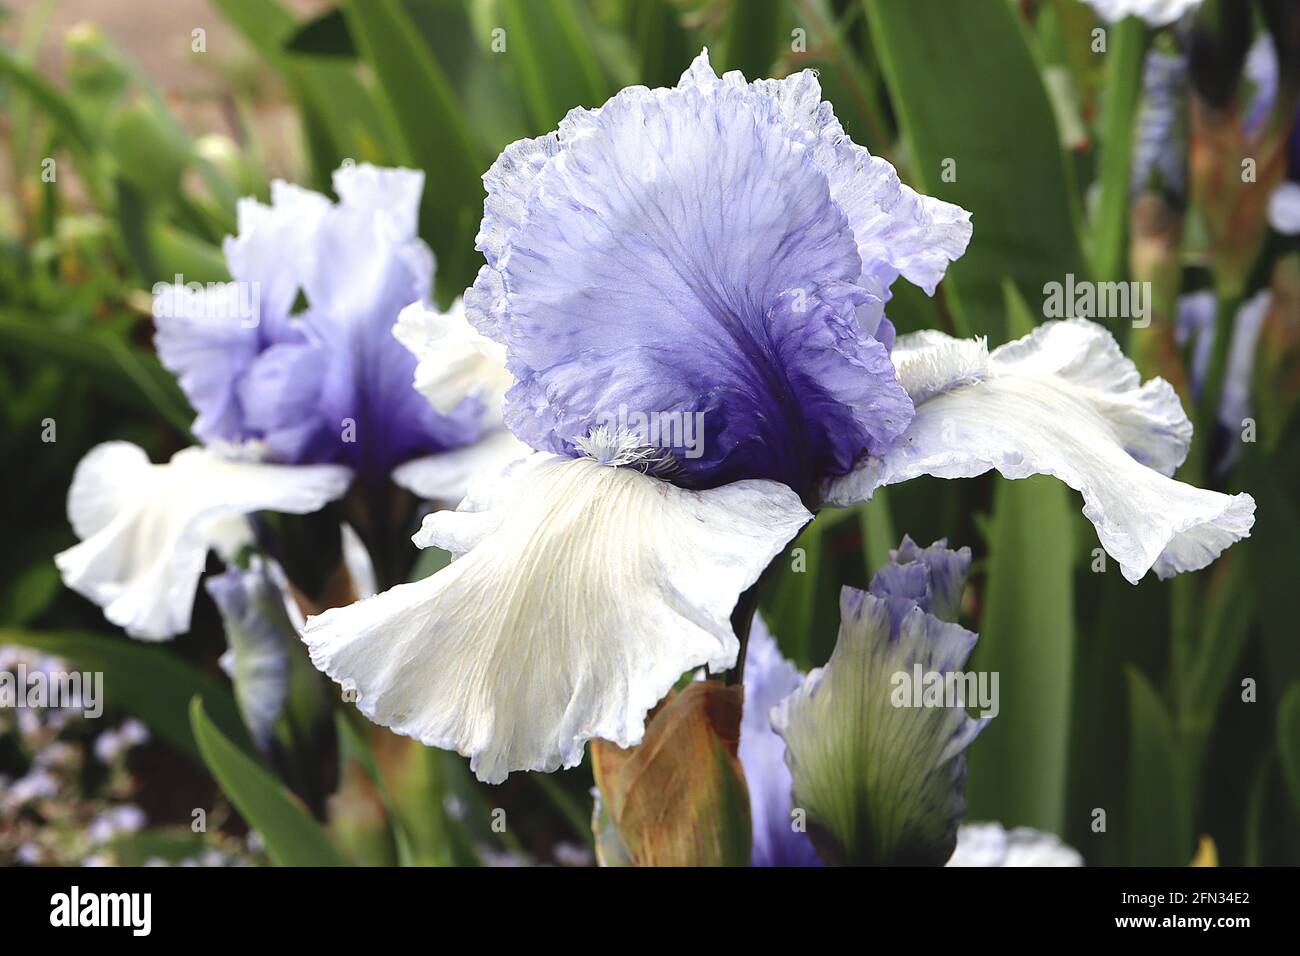 Iris ‘Cascade Springs’ Tall Bearded iris Cascate bianche, standard azzurro con base blu scuro, barba bianca, maggio, Inghilterra, Regno Unito Foto Stock